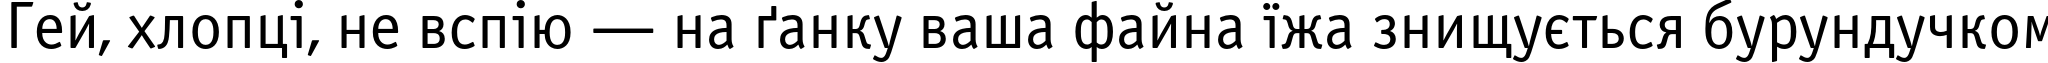 Пример написания шрифтом OfficinaSansC текста на украинском